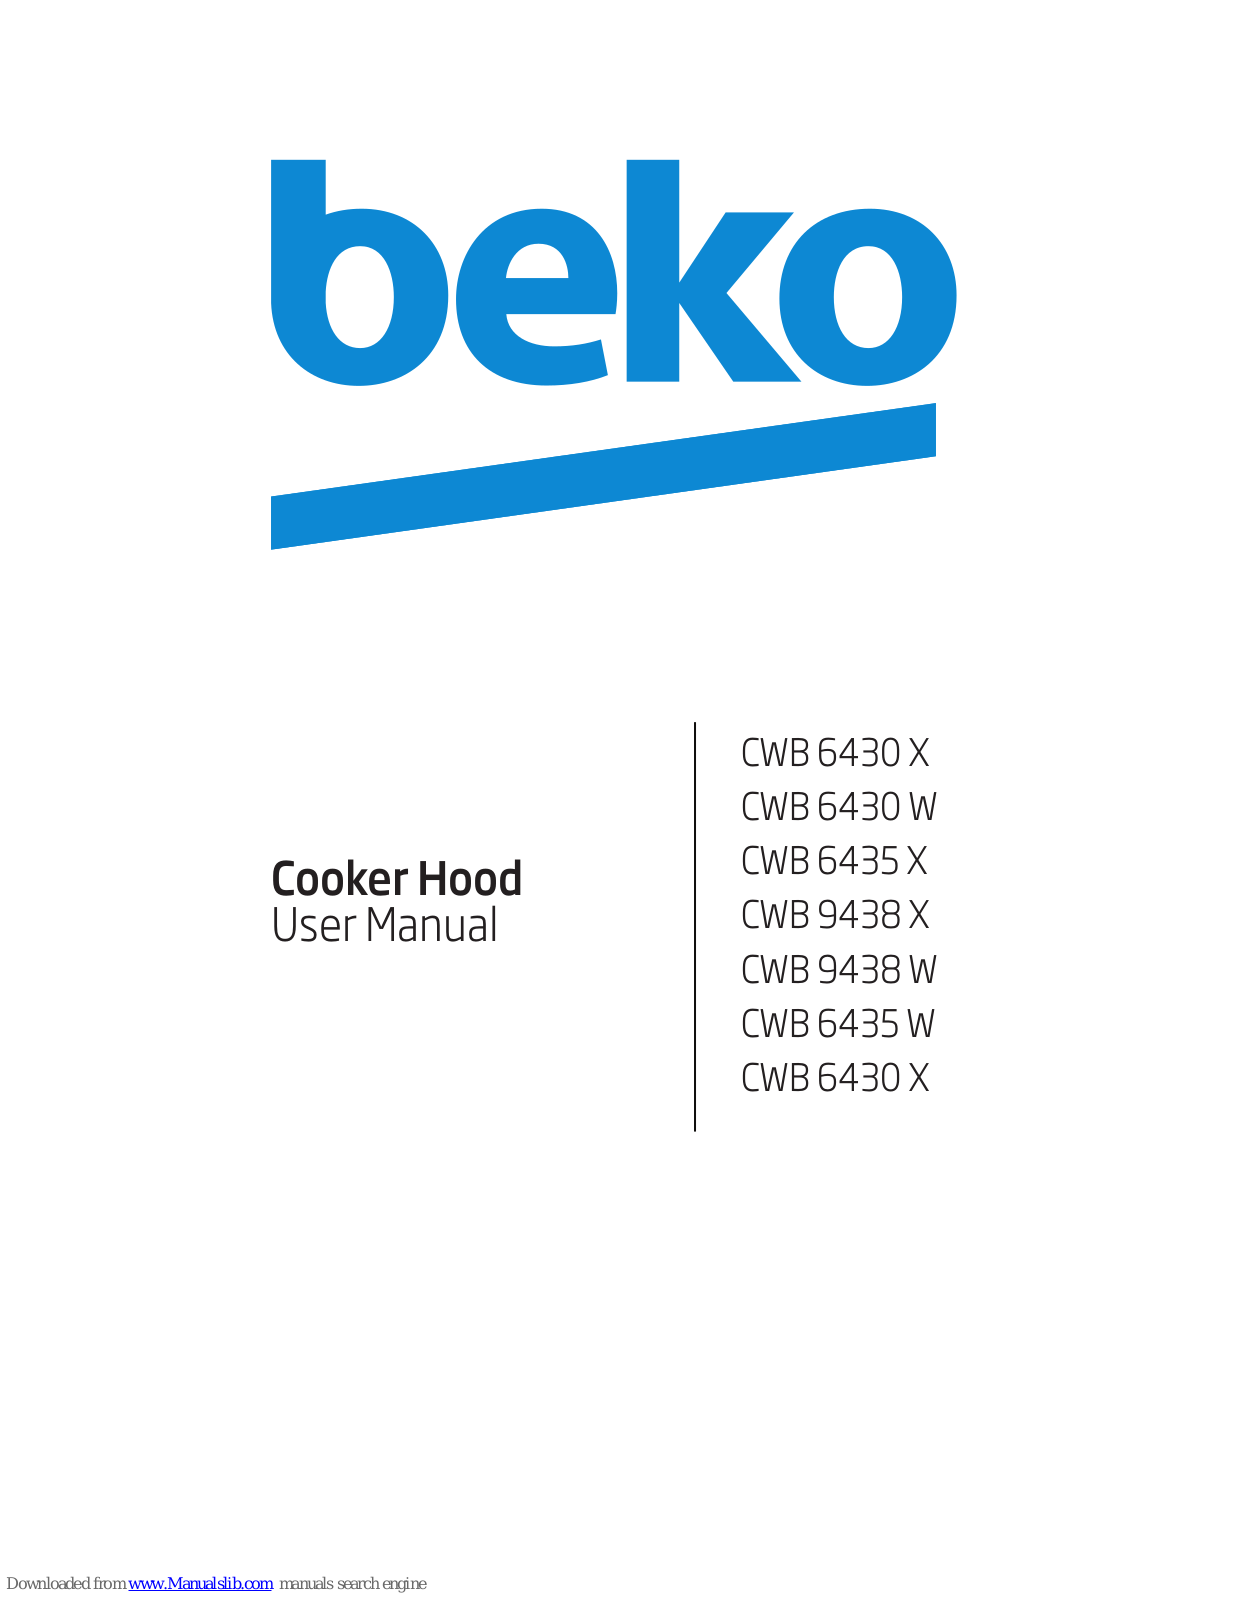 Beko CWB 6430 X, CWB 6435 X, CWB 6430 W, CWB 9438 W, CWB 6435 W User Manual